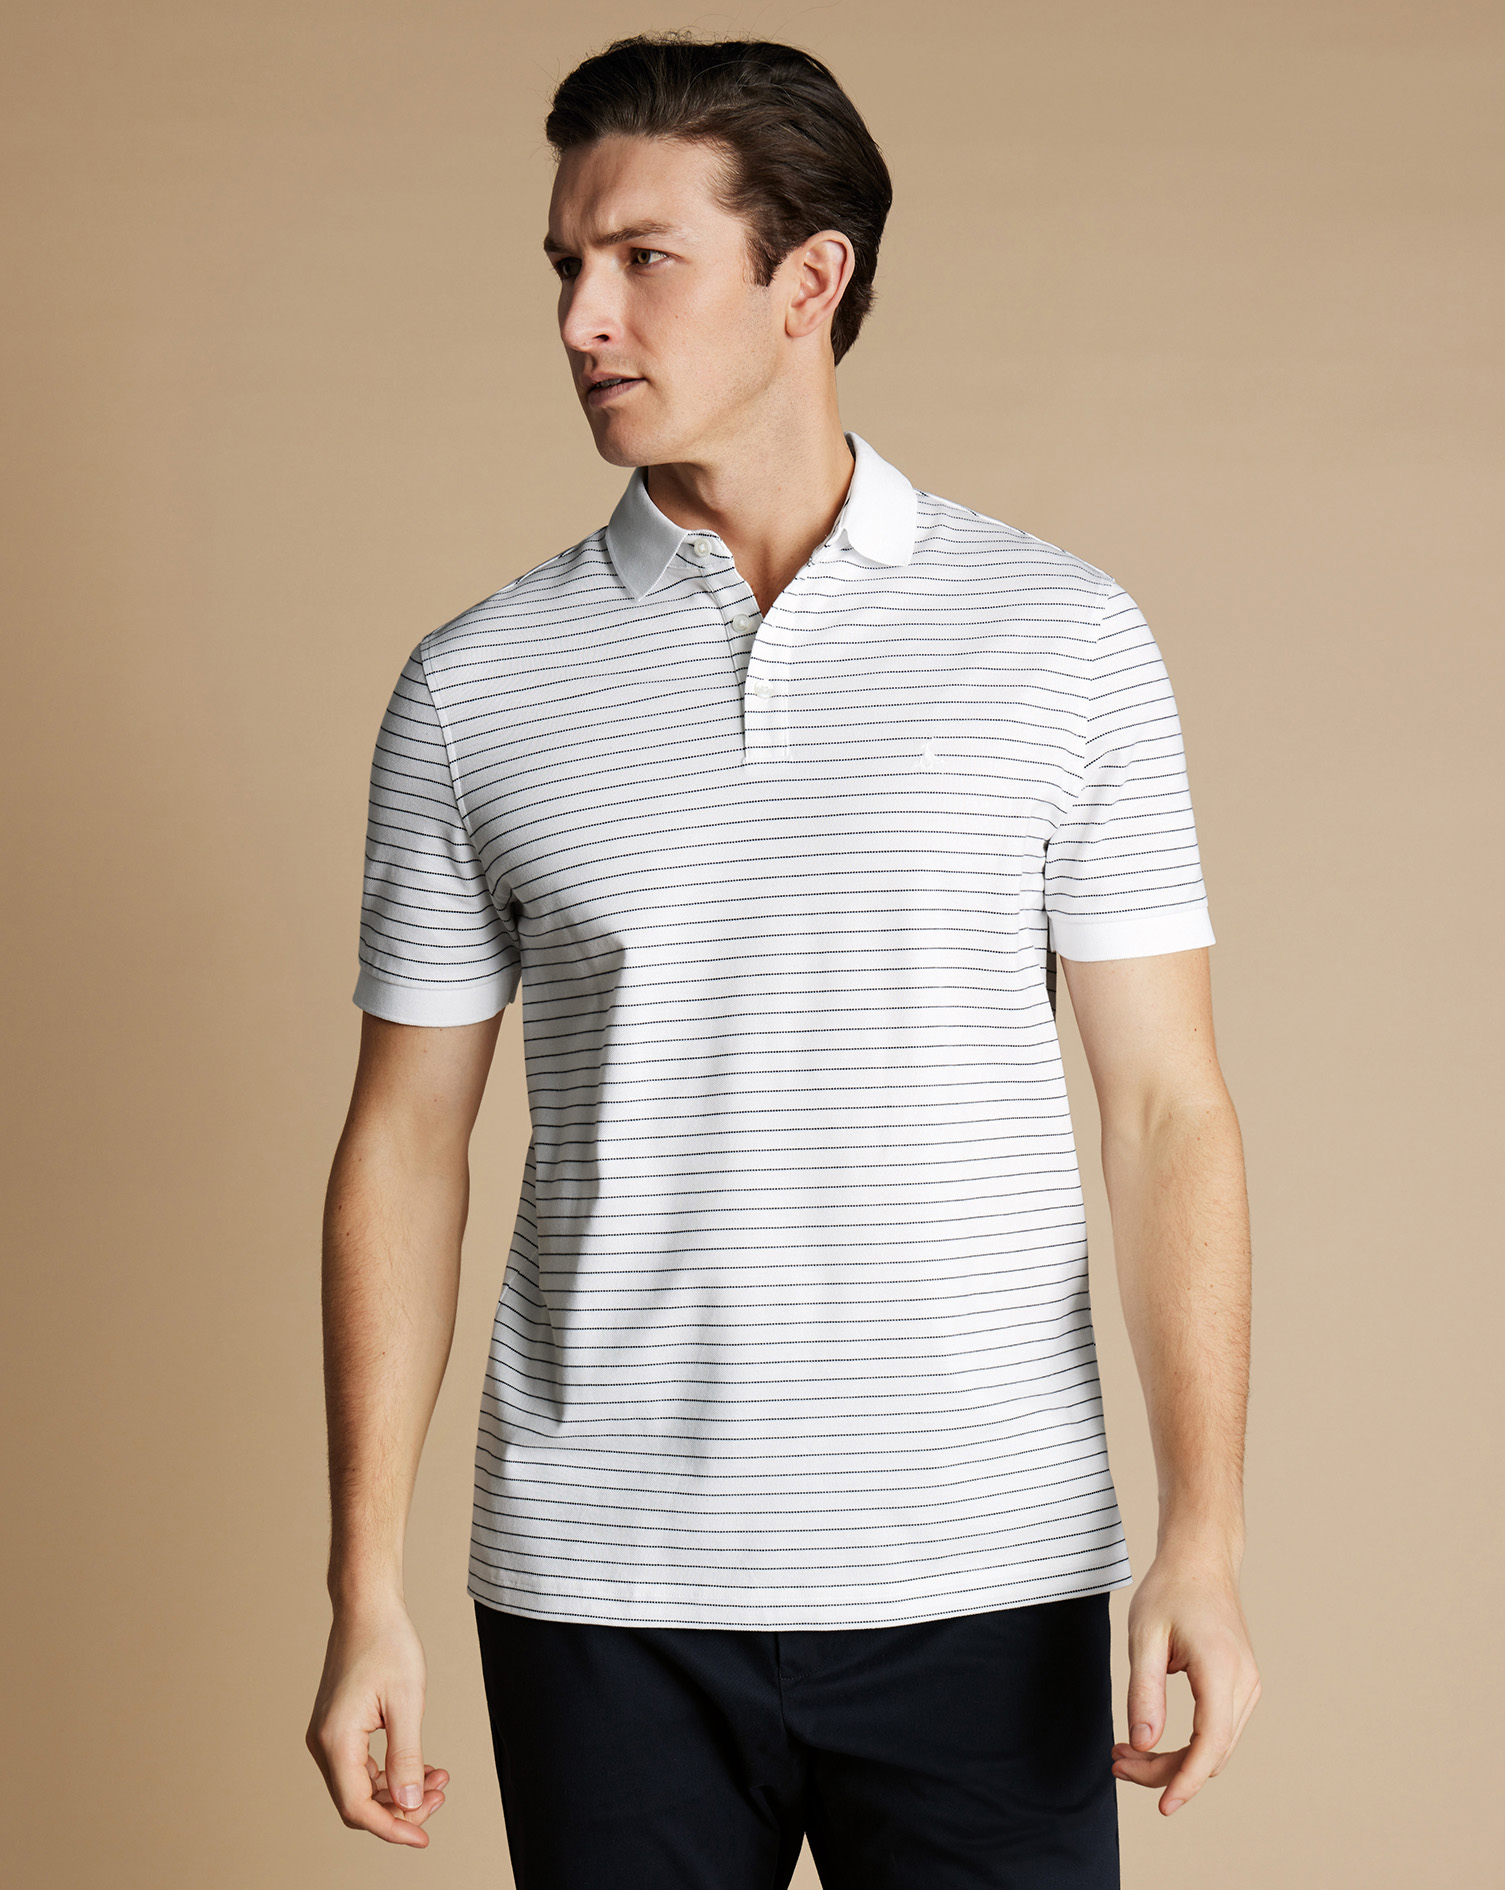 Men's Charles Tyrwhitt Pique Polo Shirt - White & Navy Size XS Cotton
